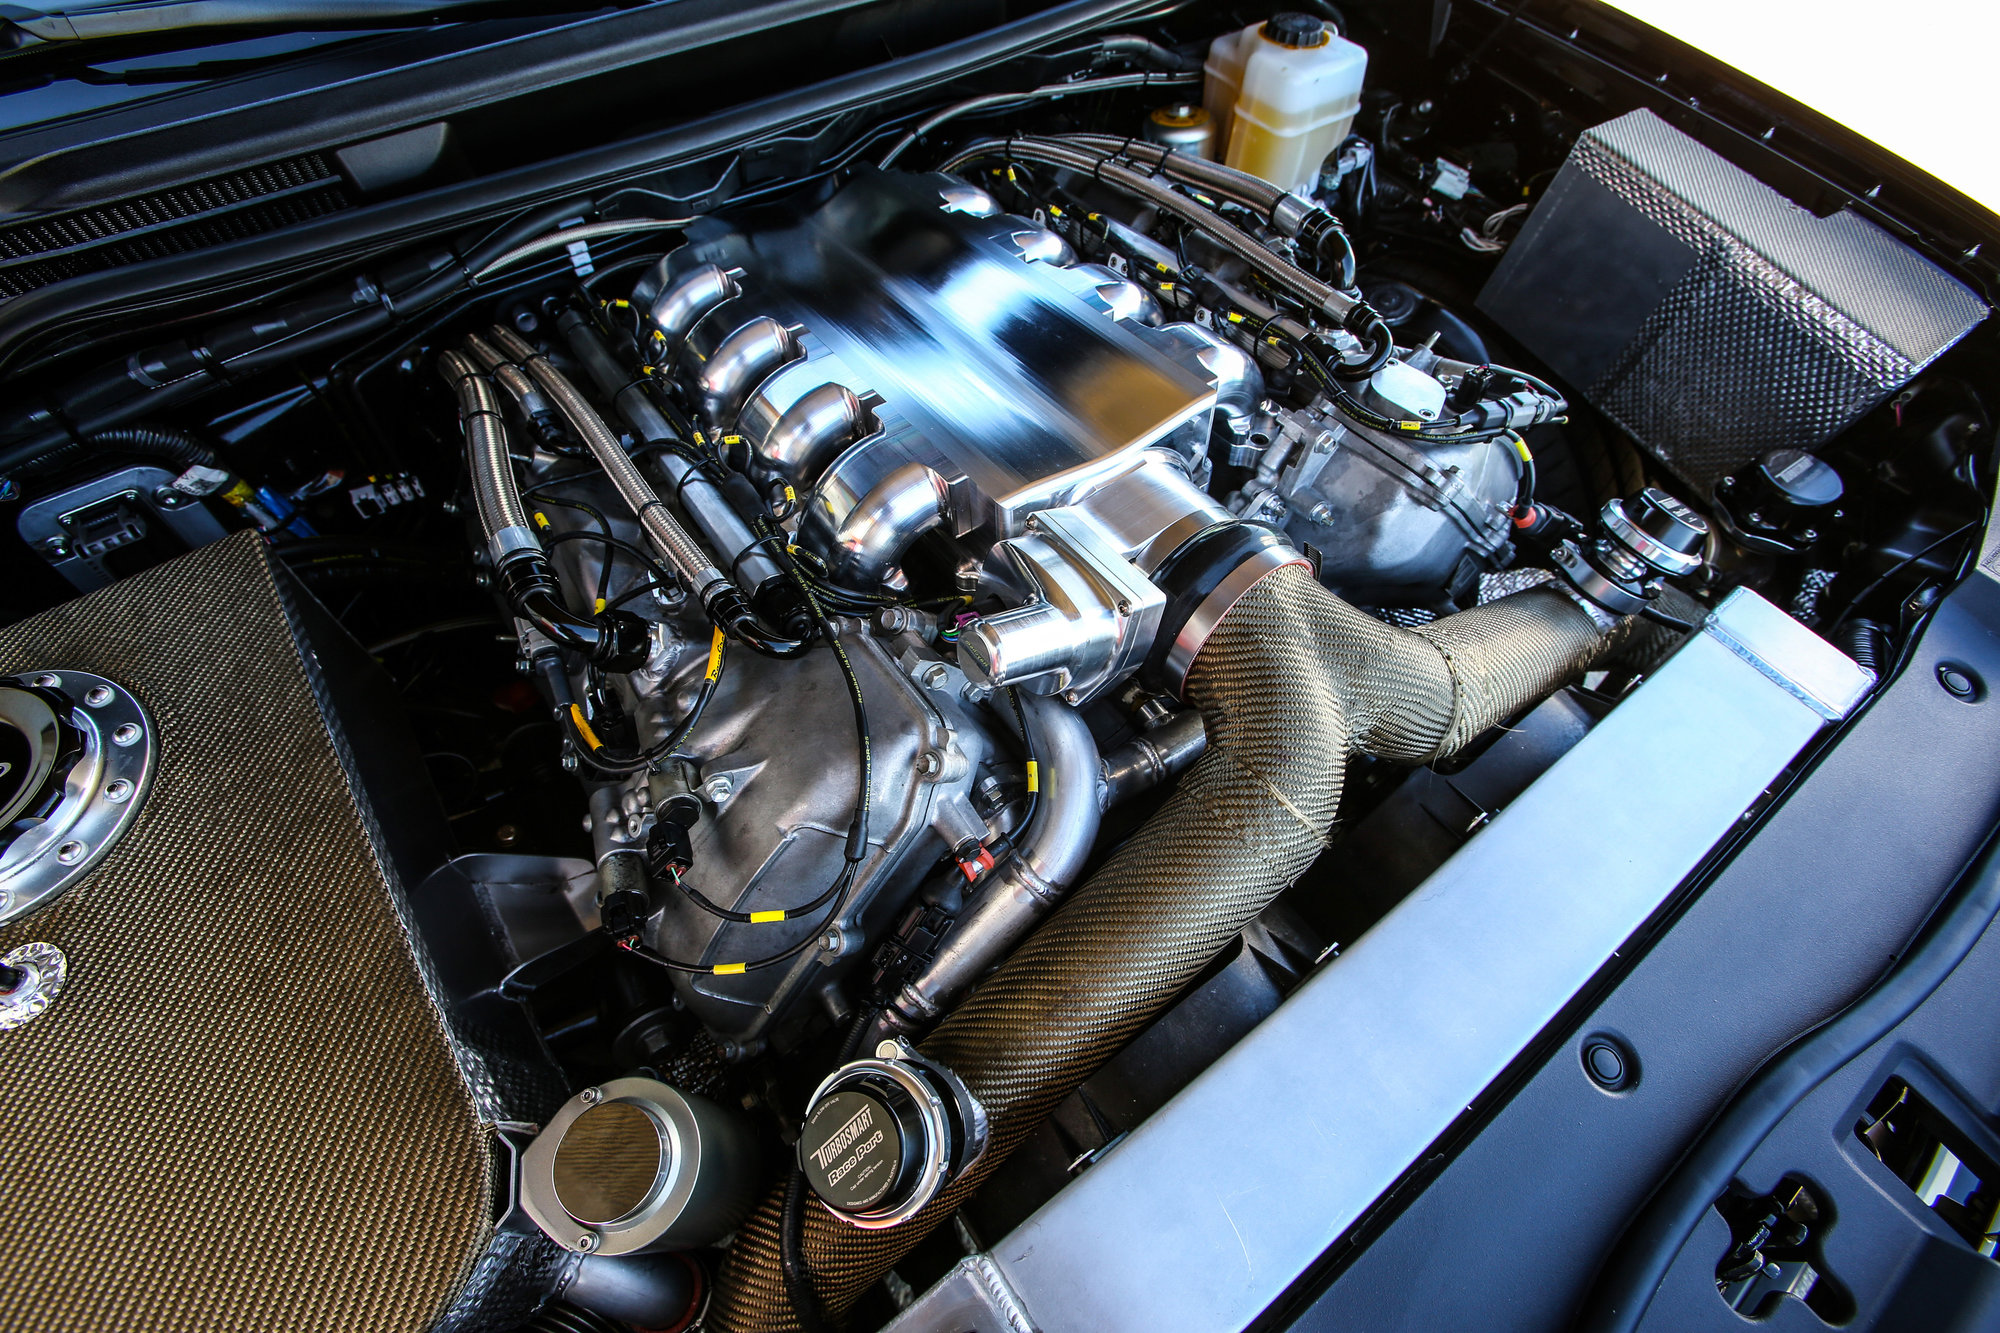 Základem je 5,7 litrový motor V8, který doplňují dvě turbodmychadla